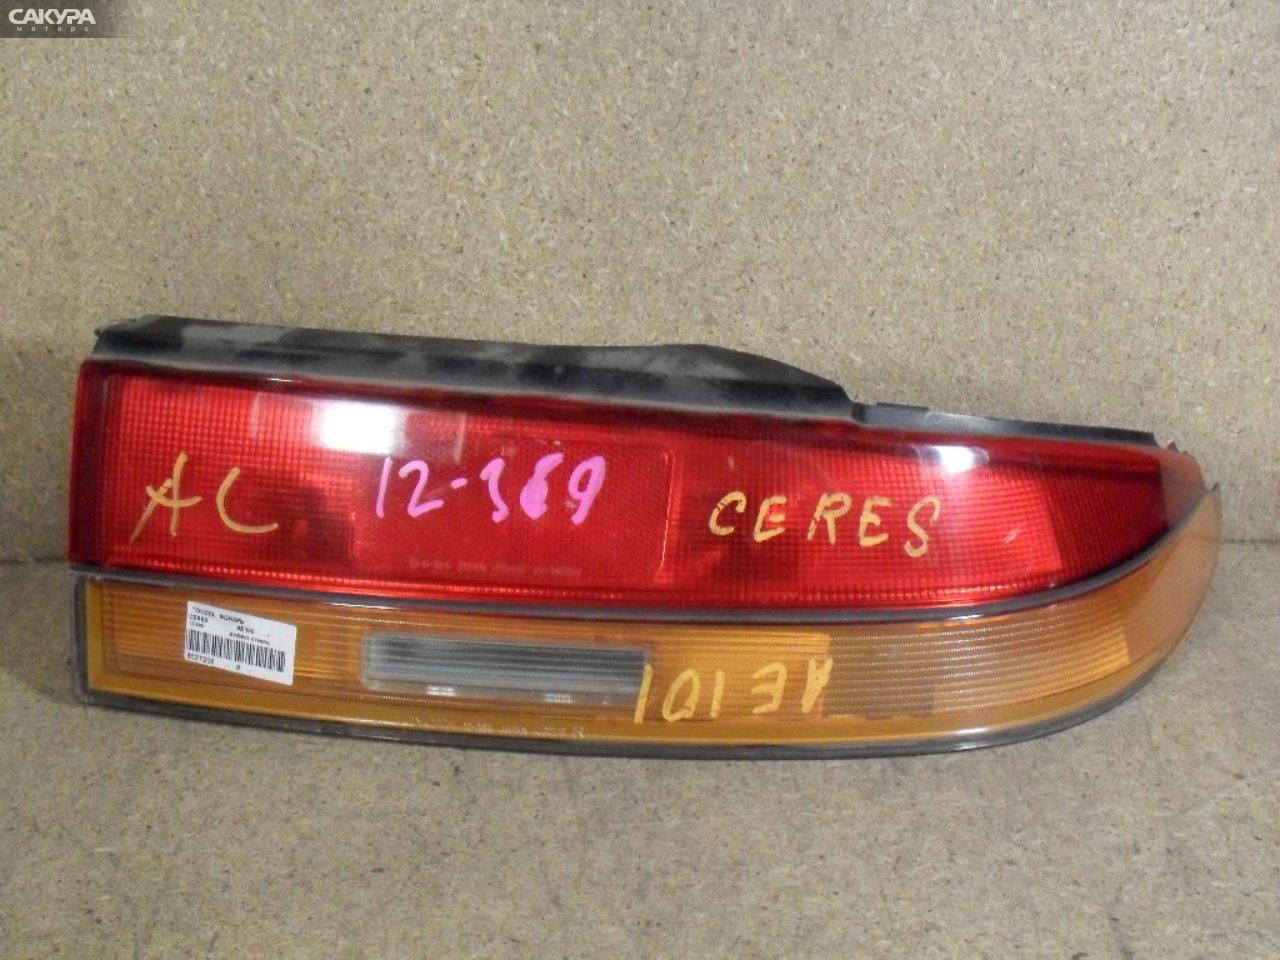 Фонарь стоп-сигнала правый Toyota Corolla Ceres AE100 12-369: купить в Сакура Абакан.